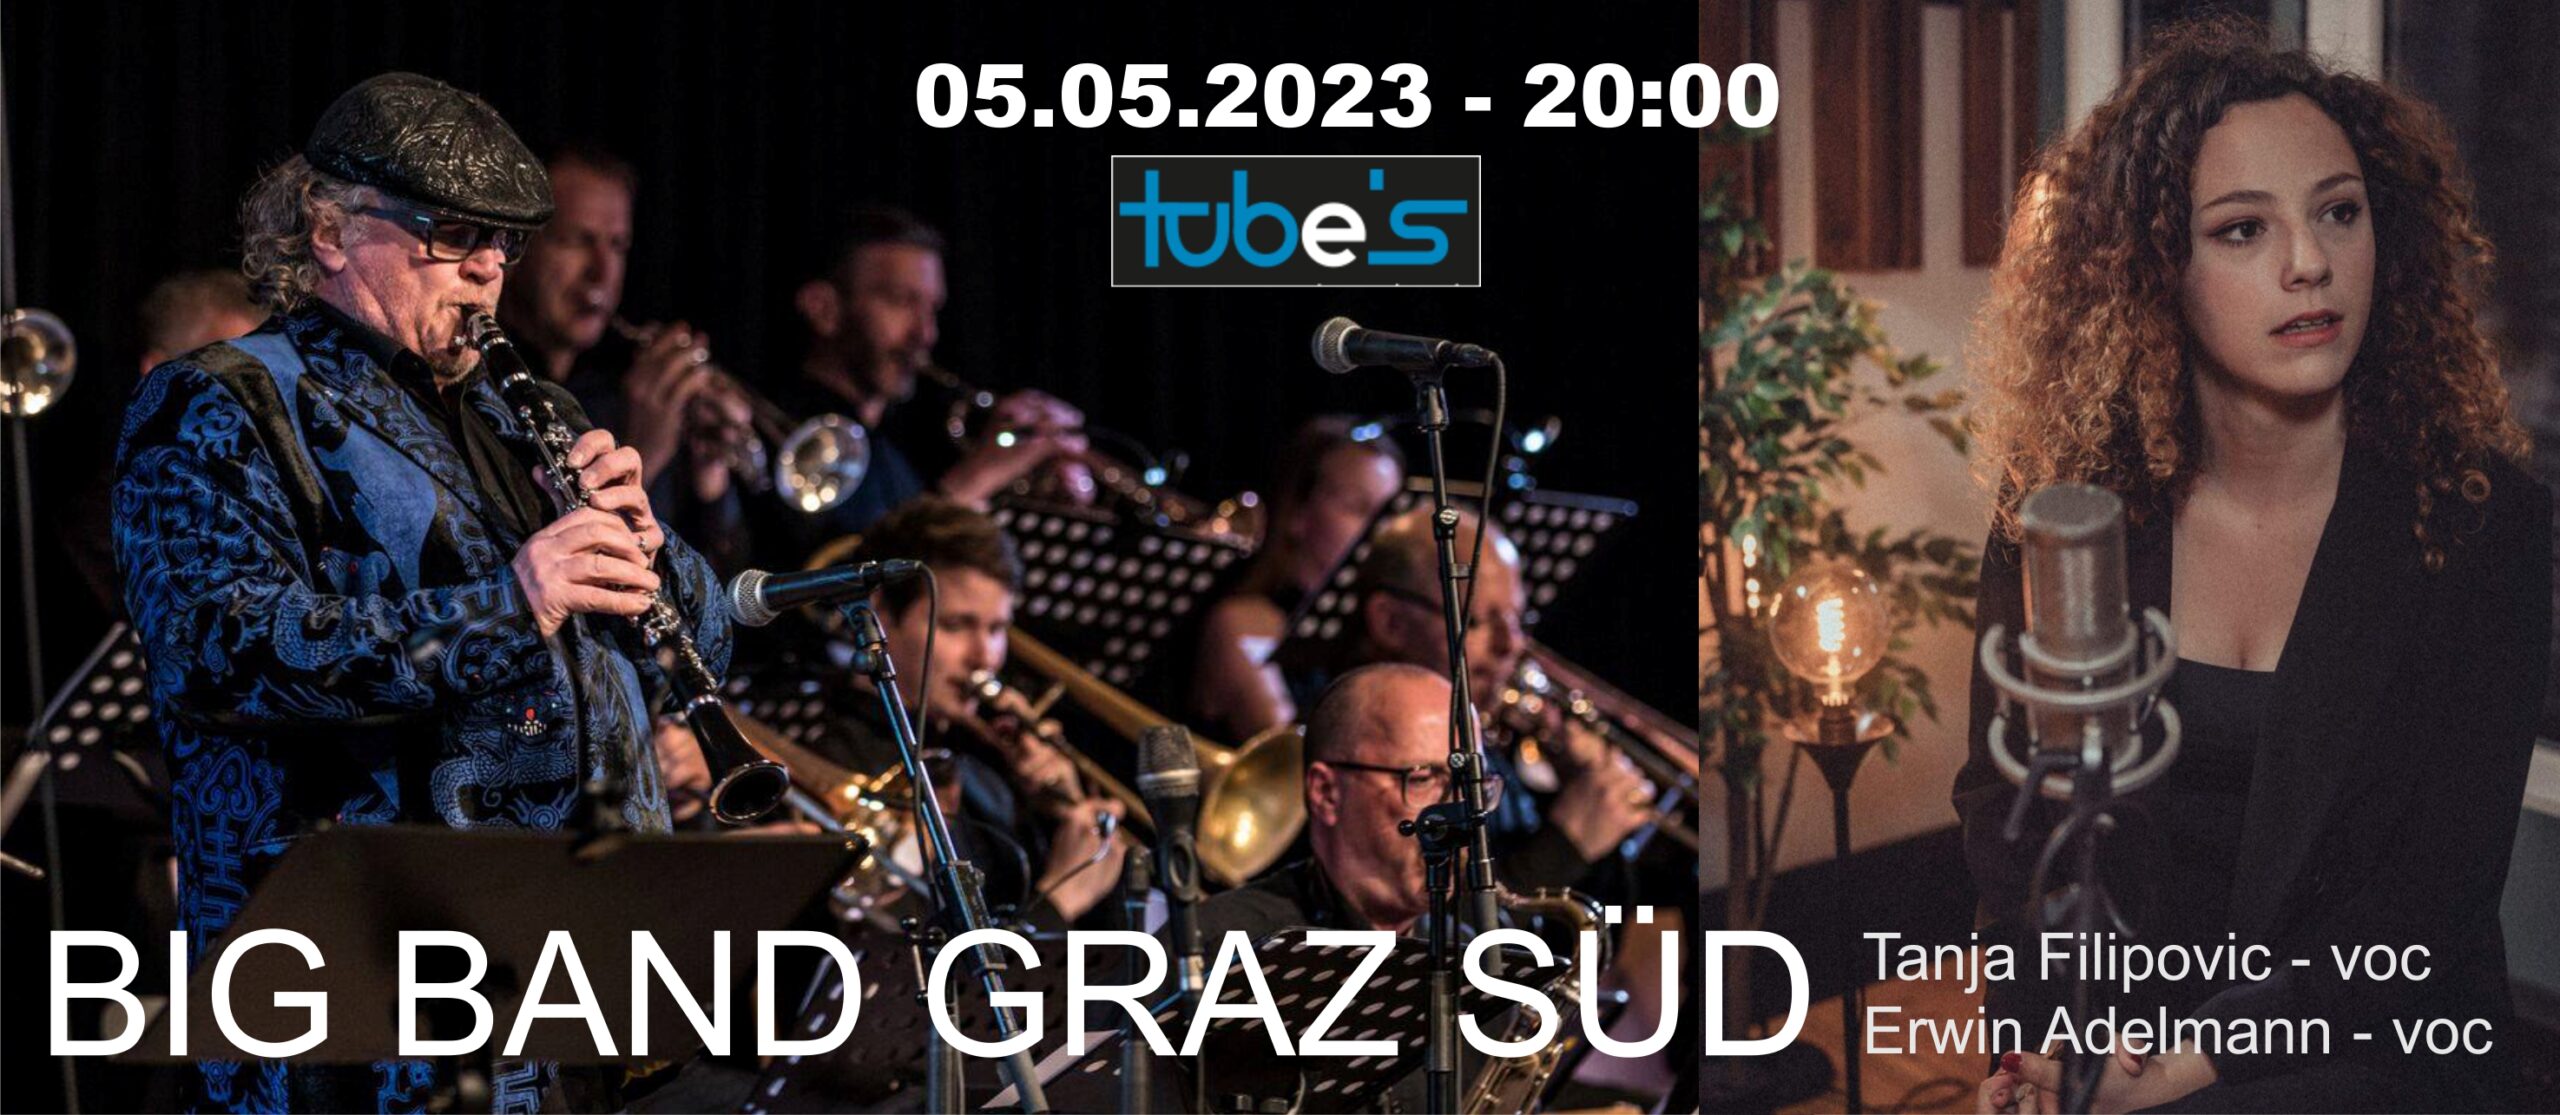 Konzert mit der Bigband Graz-Süd & Sigi Feigl im tube’s